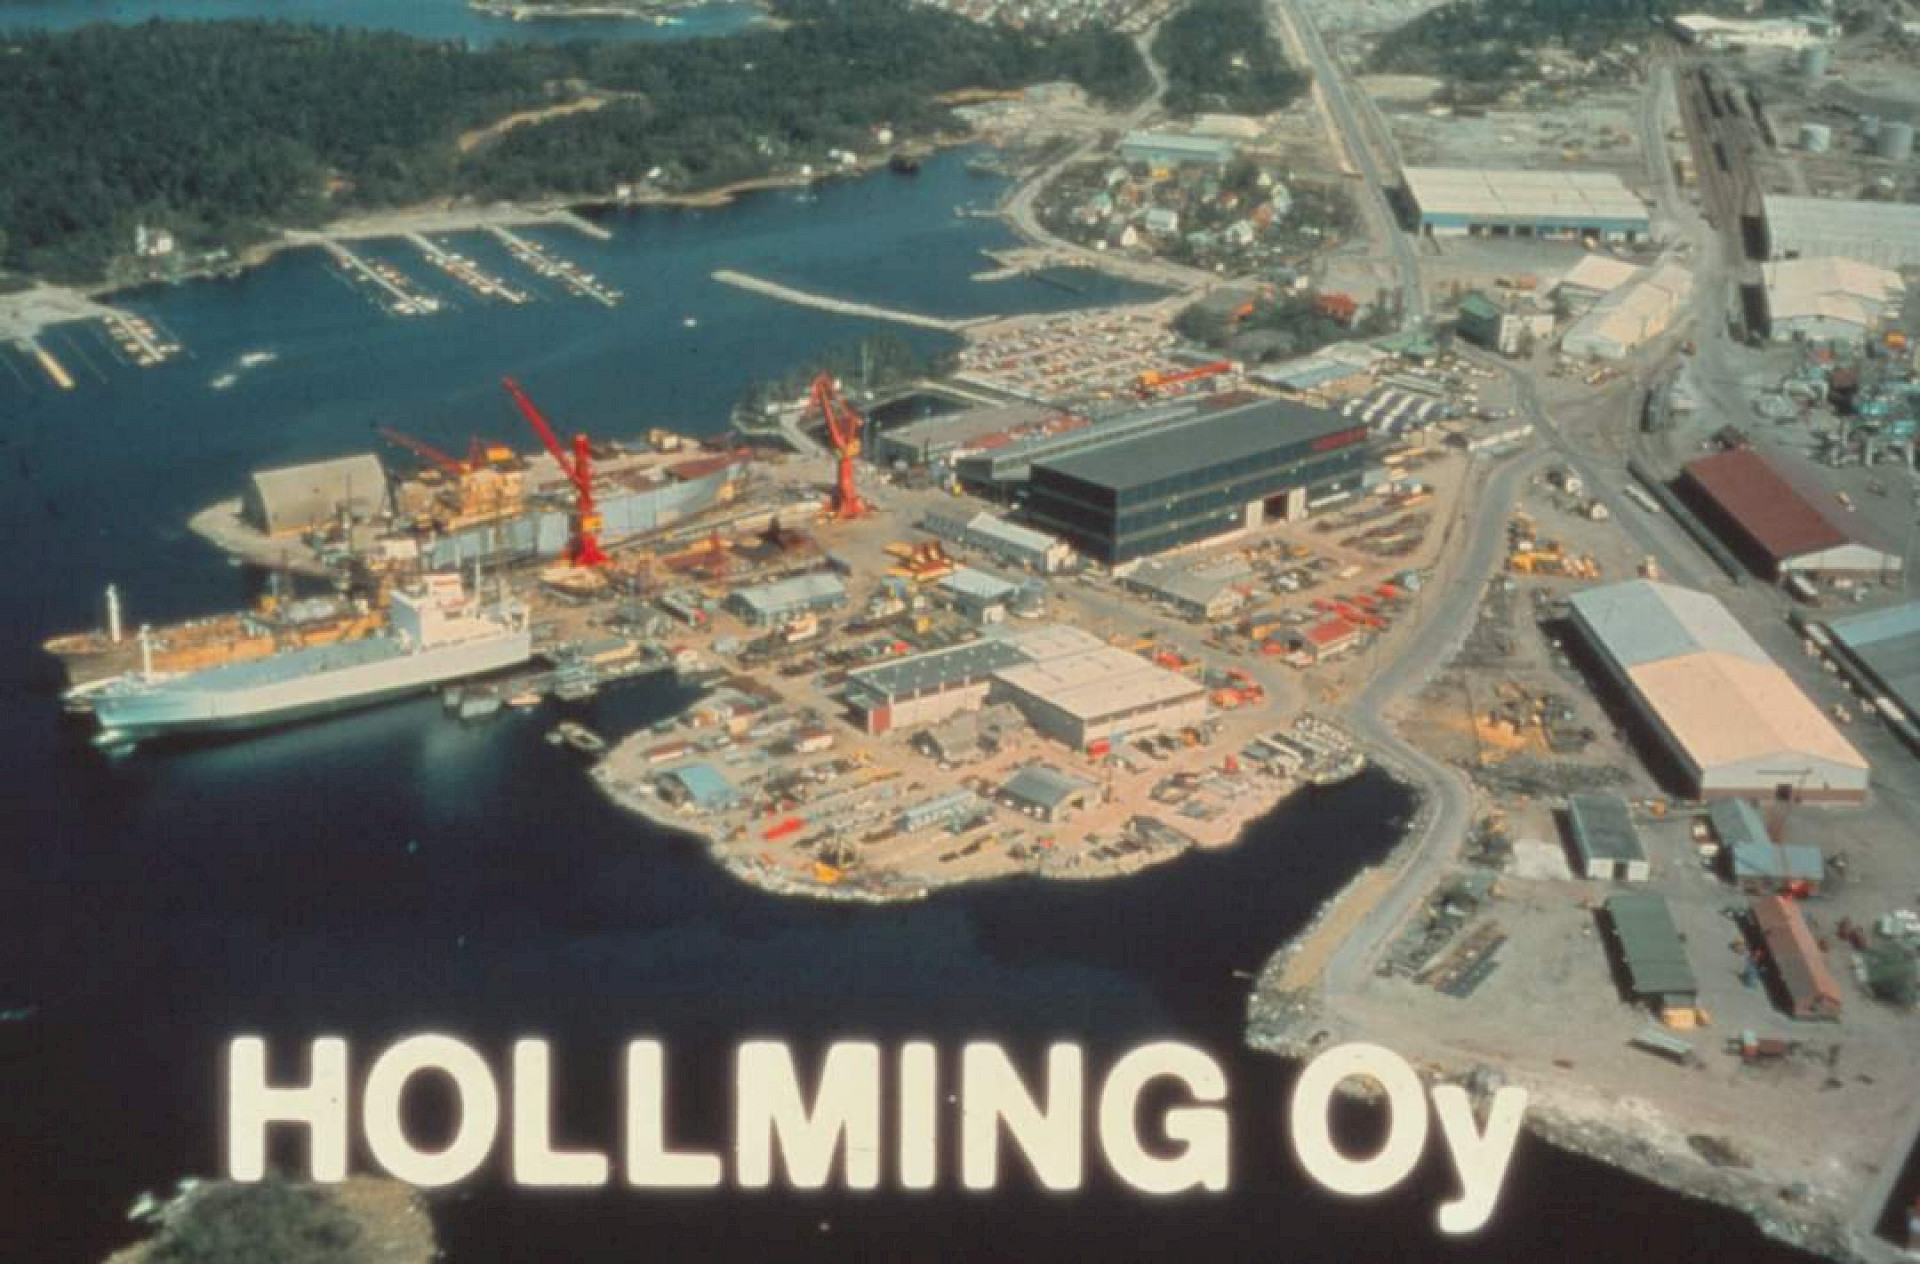 Hollmingin telakka 1970-luvulla. RMM27905 / Association of finnish shipbuilders